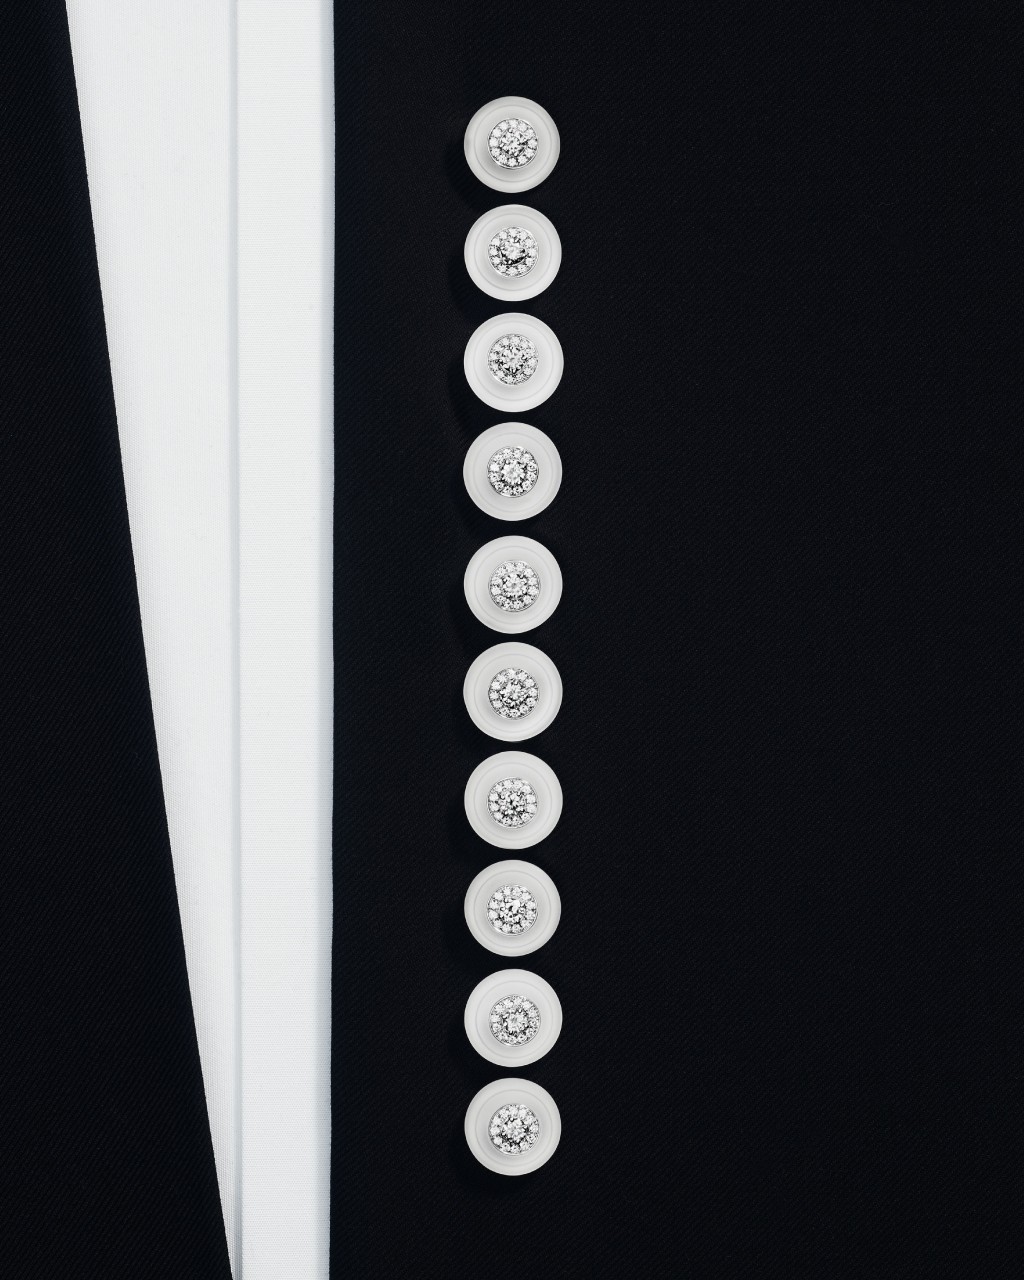 Boutons钮扣，由15颗镶嵌钻石与水晶的白金钮扣组成的珠宝套装，可单独佩戴，也可配搭其他钮扣，用作发饰、衣钮或领带装饰，塑造百变组合。